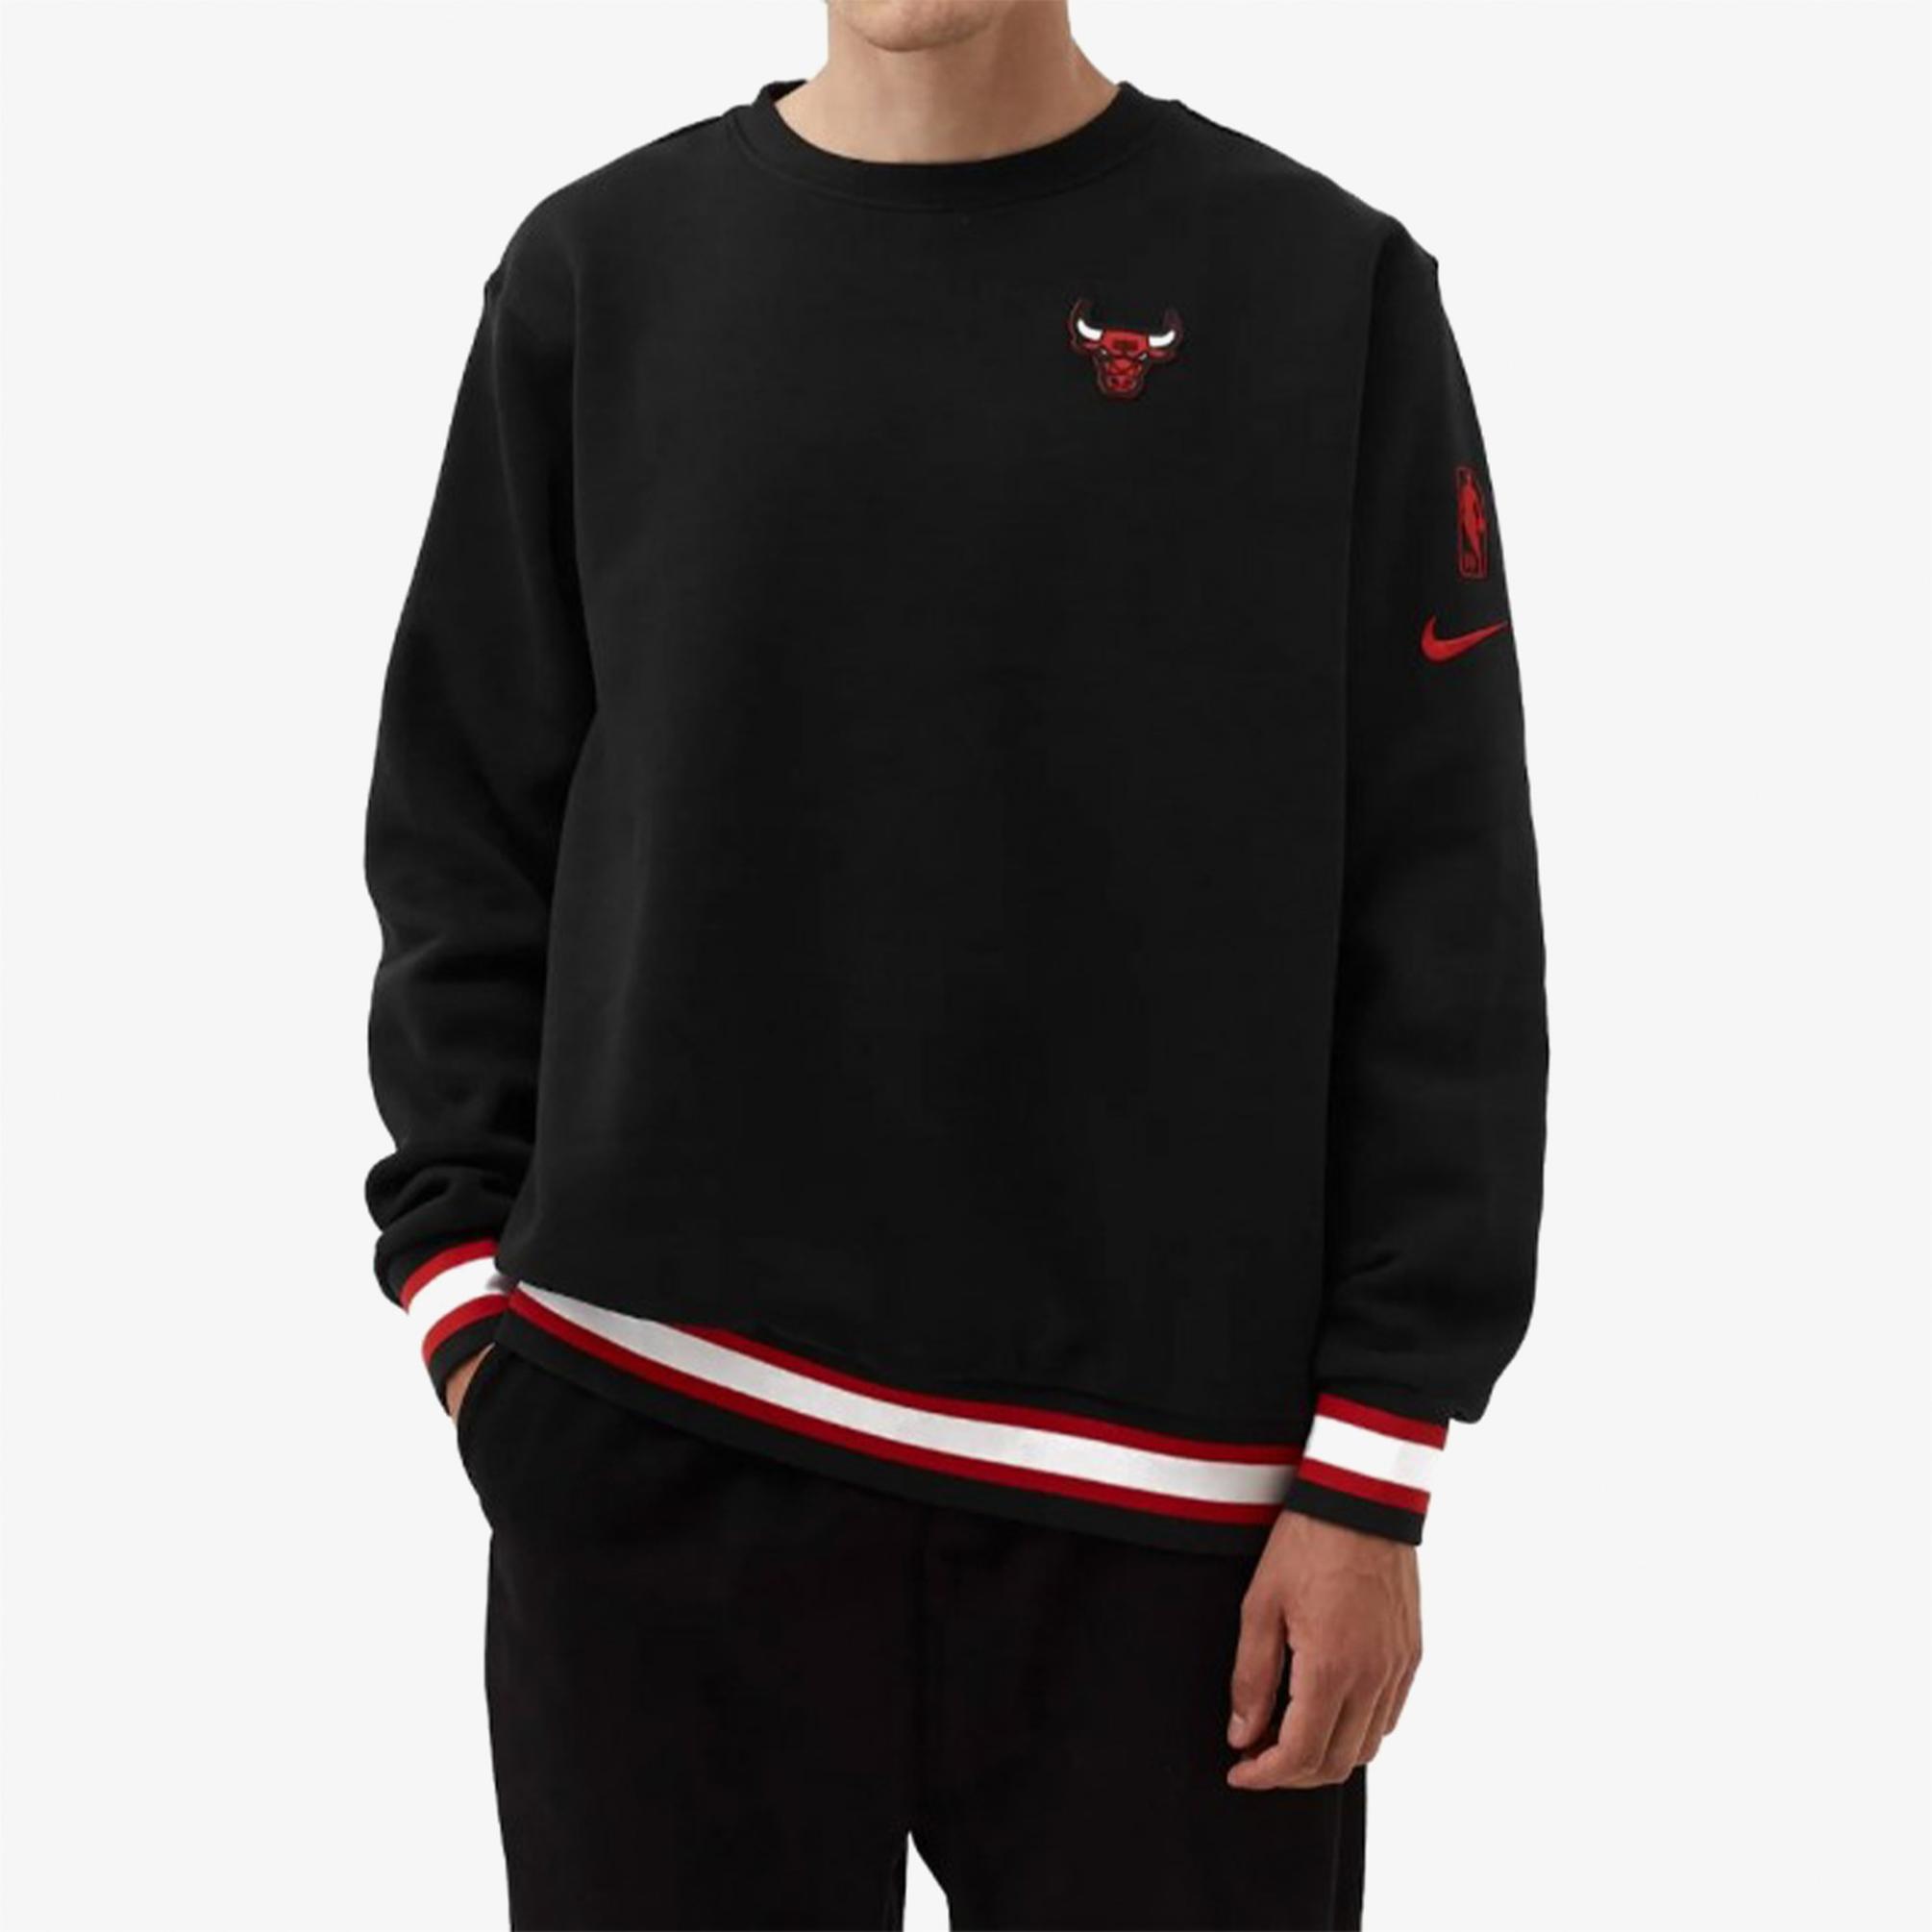  Nike Courtside Chicago Bulls Erkek Siyah Sweatshirt